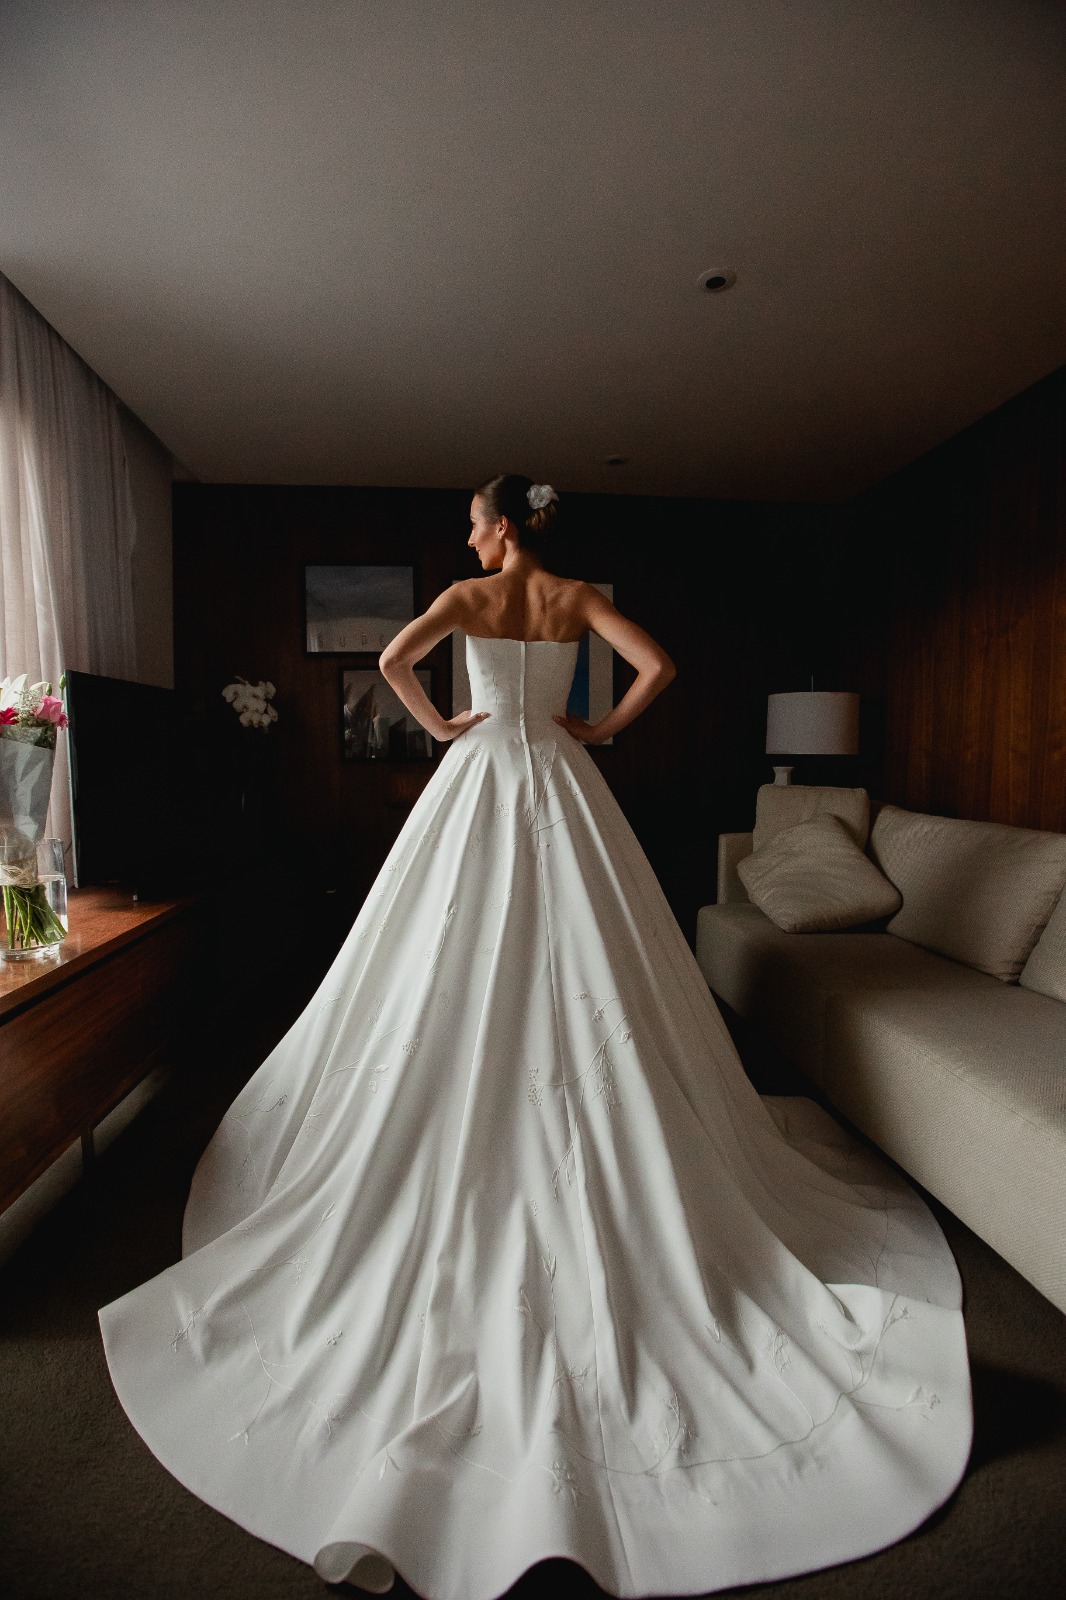 Vestido de noiva assinado por Luhana Pawlick | Foto Melqui Zago Fotografia e Pam Passos